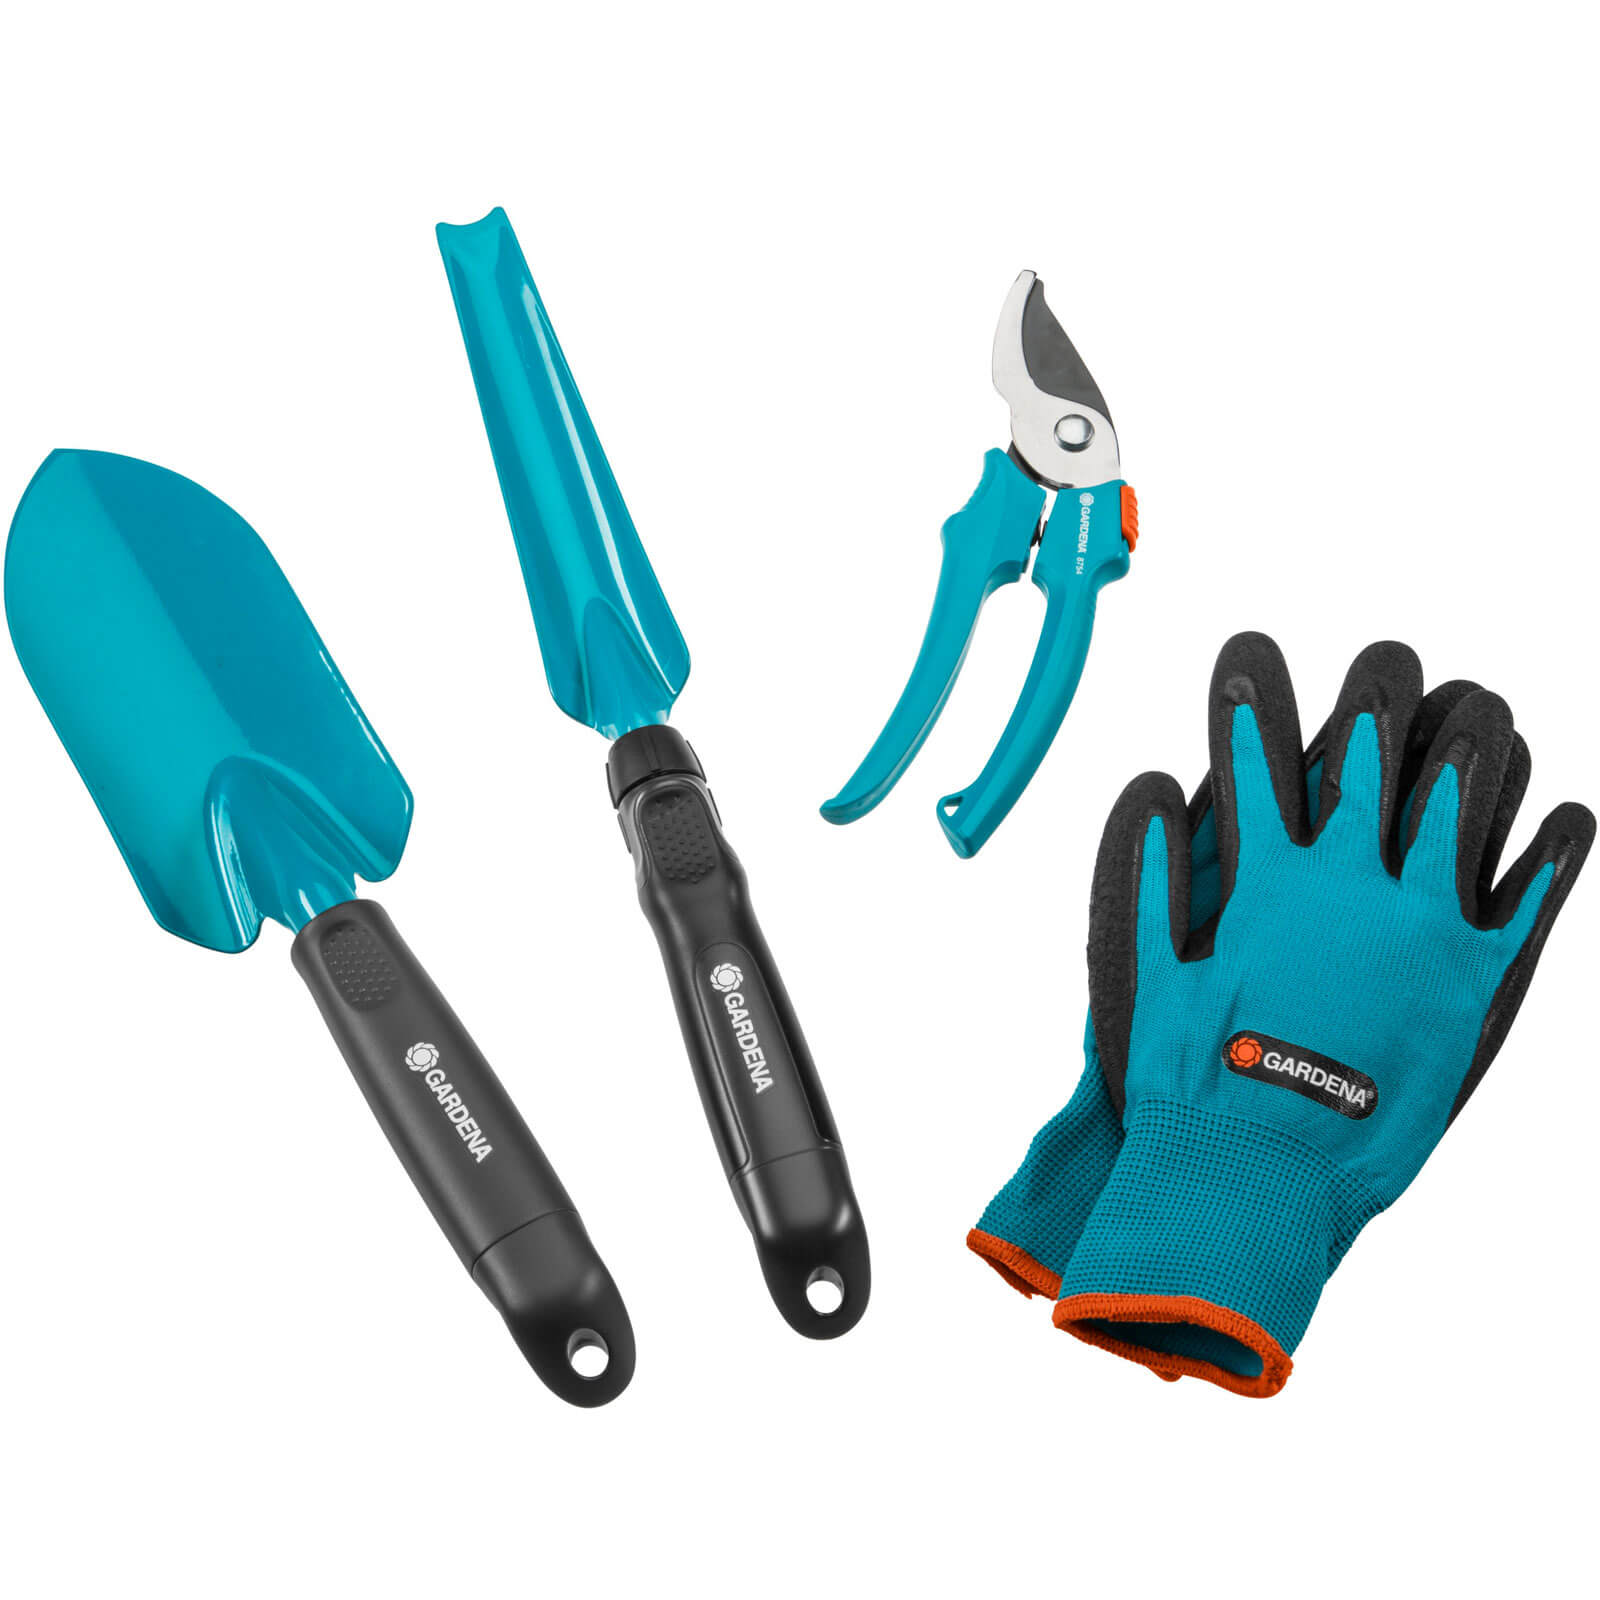 Photo of Gardena City Gardening Basic Equipment Hand Tool Gift Pack